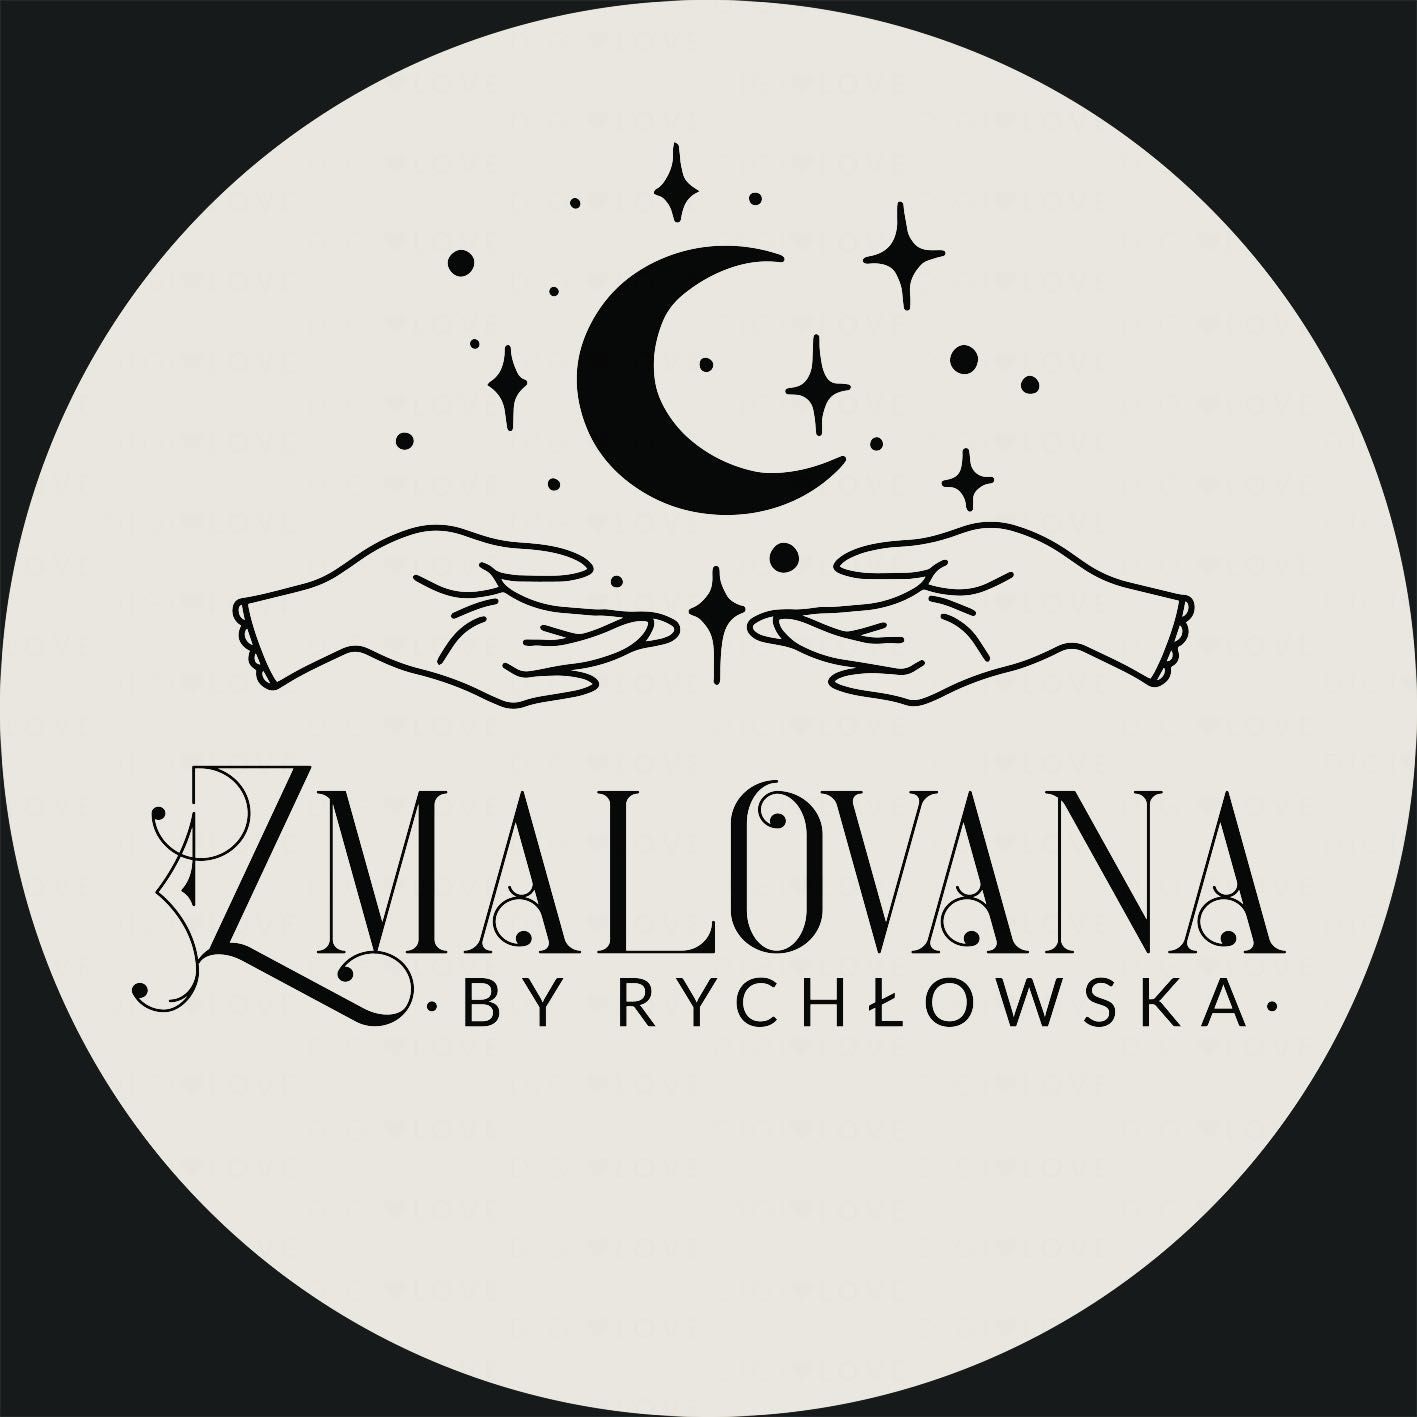 Zmalovana by Rychłowska, Pocztowa 25, (Róg Chodkiewicza a Pocztowa), 70-361, Szczecin